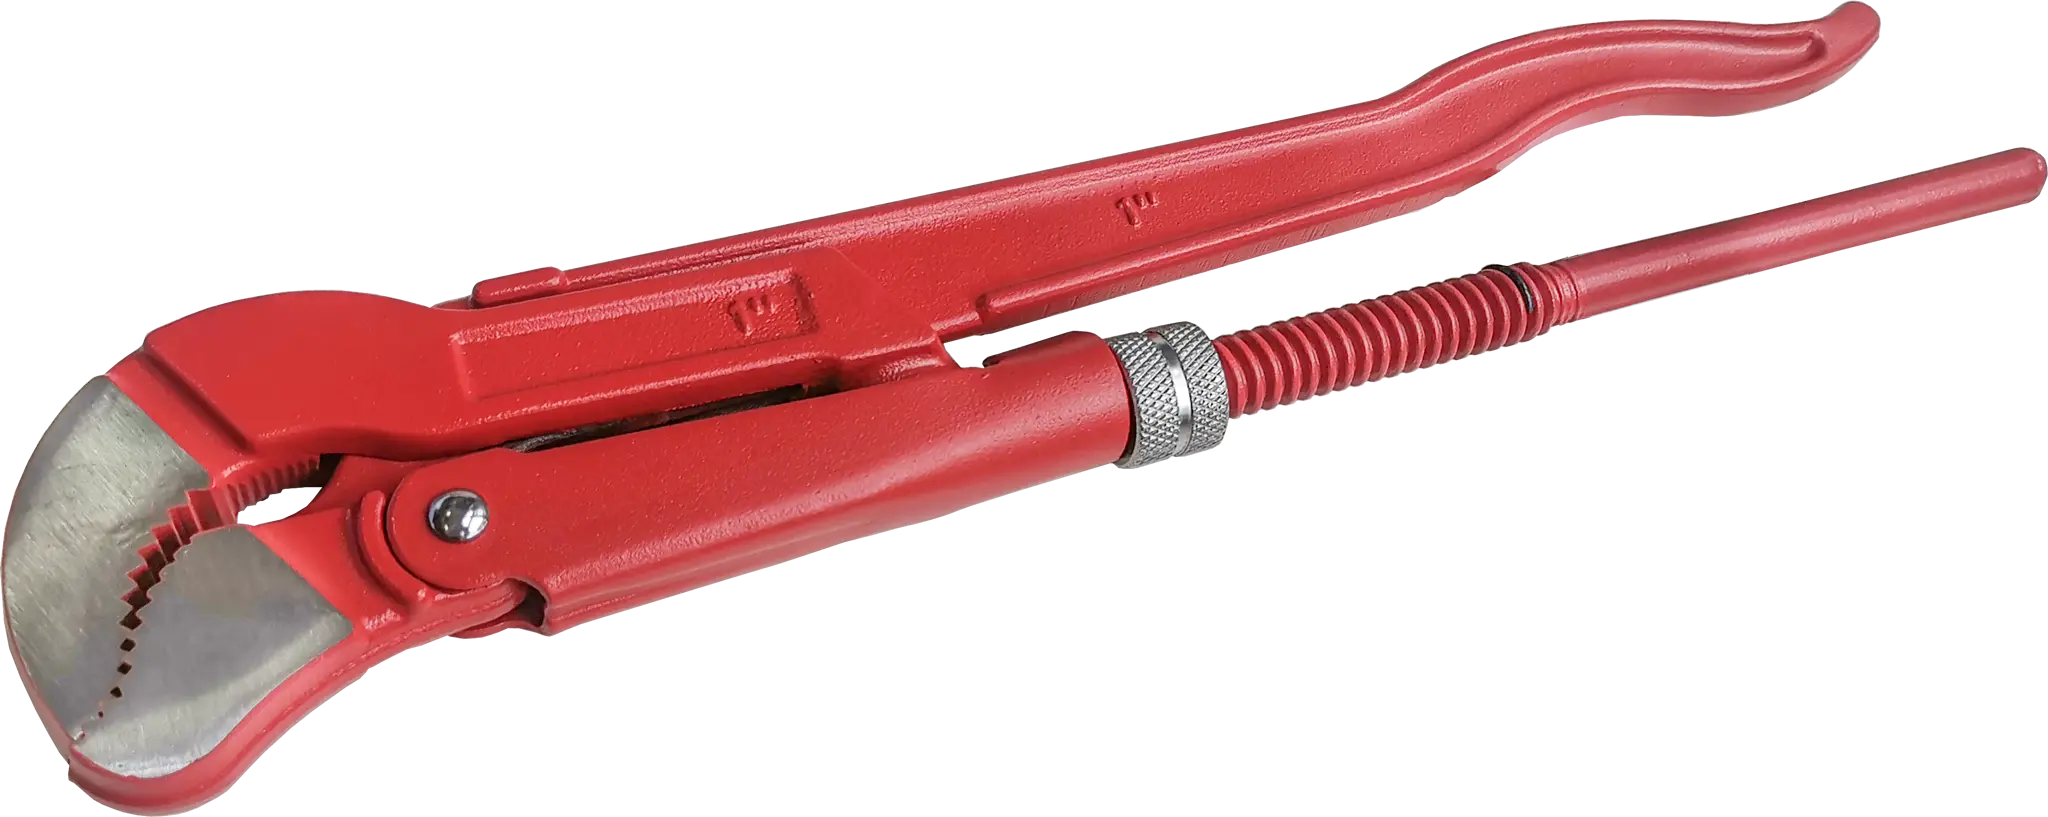 Ключ трубный газовый рычажный S 1045.0254 захват 25 мм, длина 320 мм рычажный трубный ключ низ